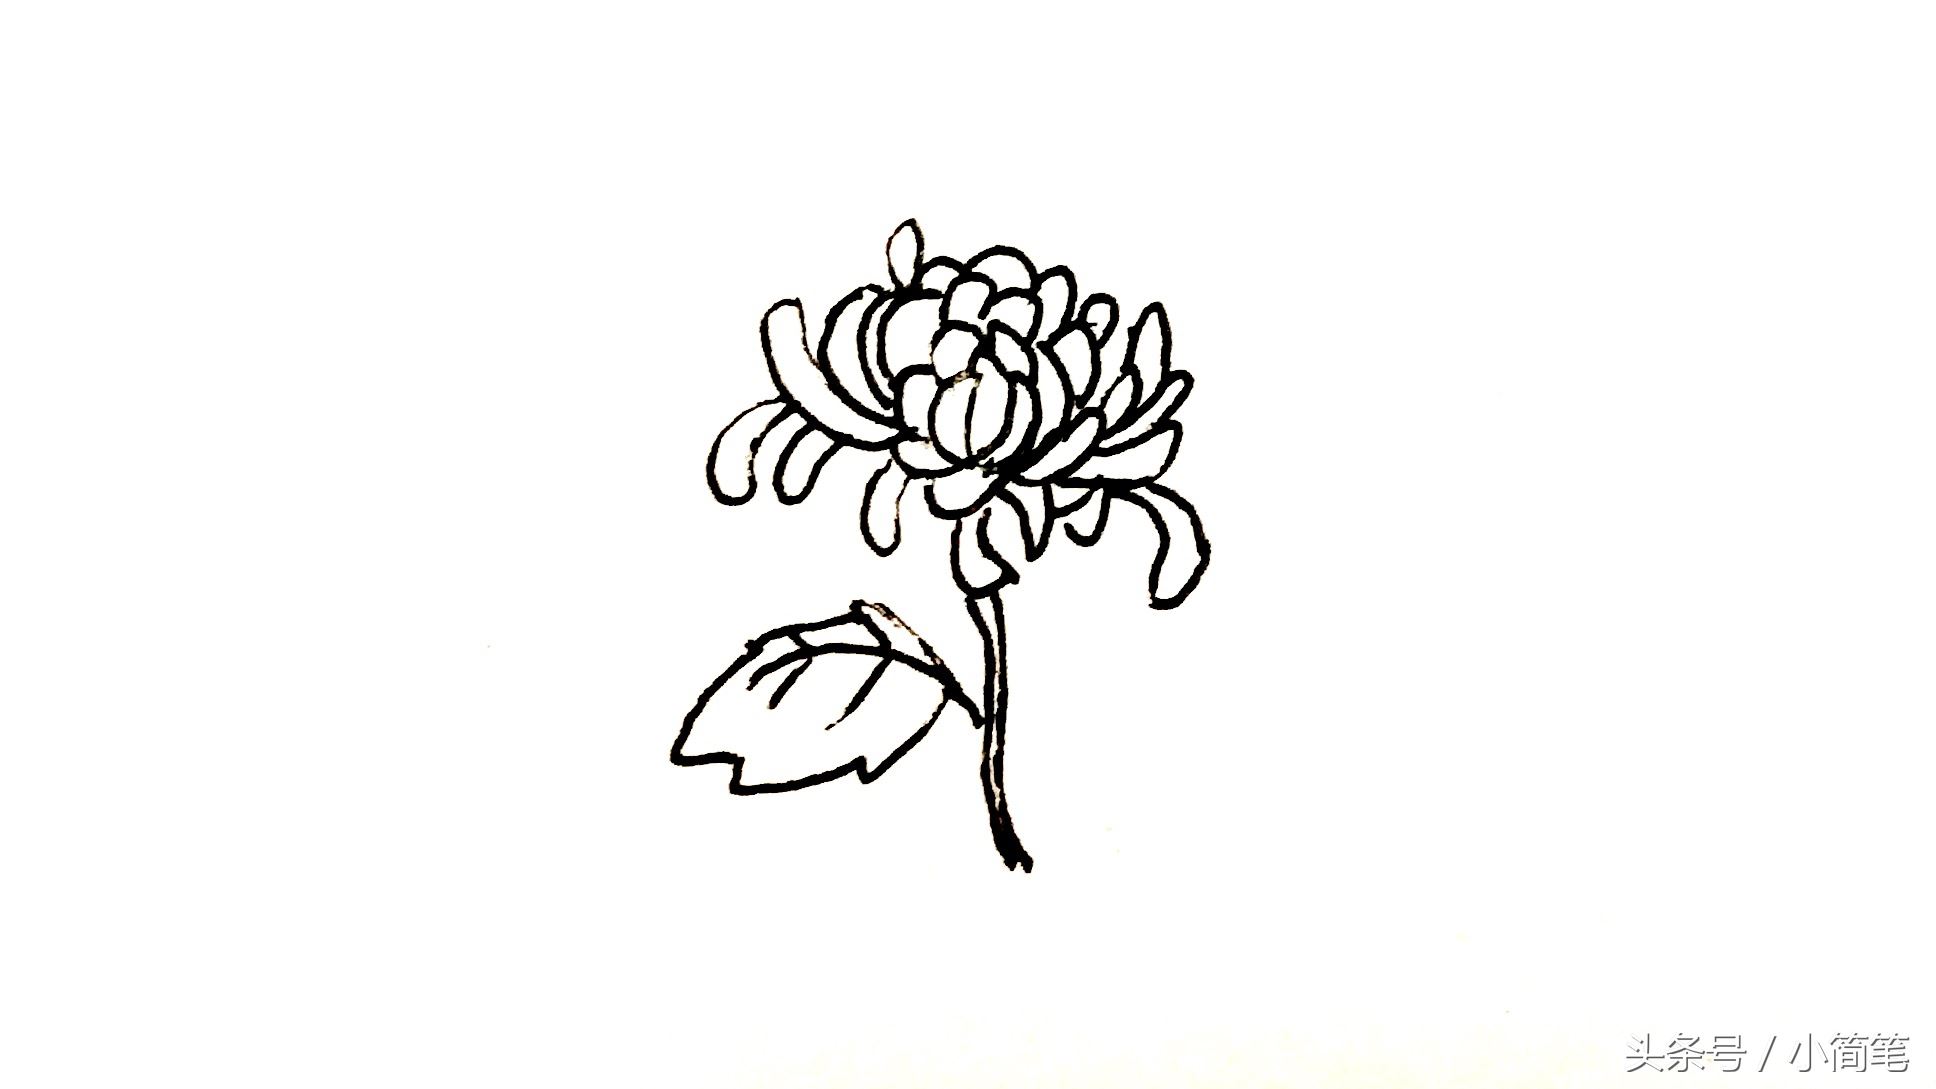 育儿简笔画植物篇吉祥的菊花绘画步骤图解